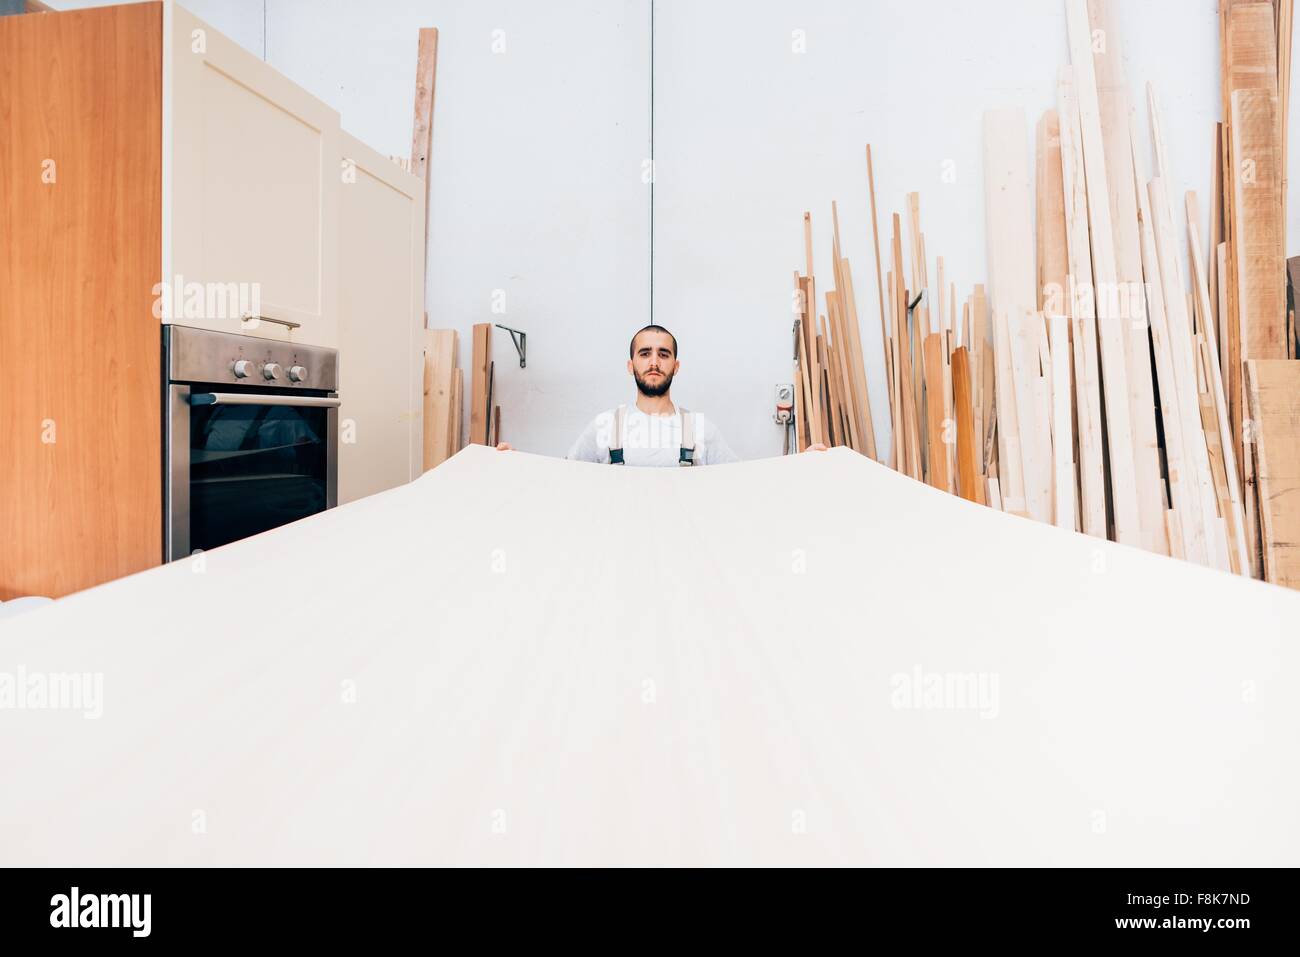 Carpenter avec grande feuille de bois dans l'atelier Banque D'Images